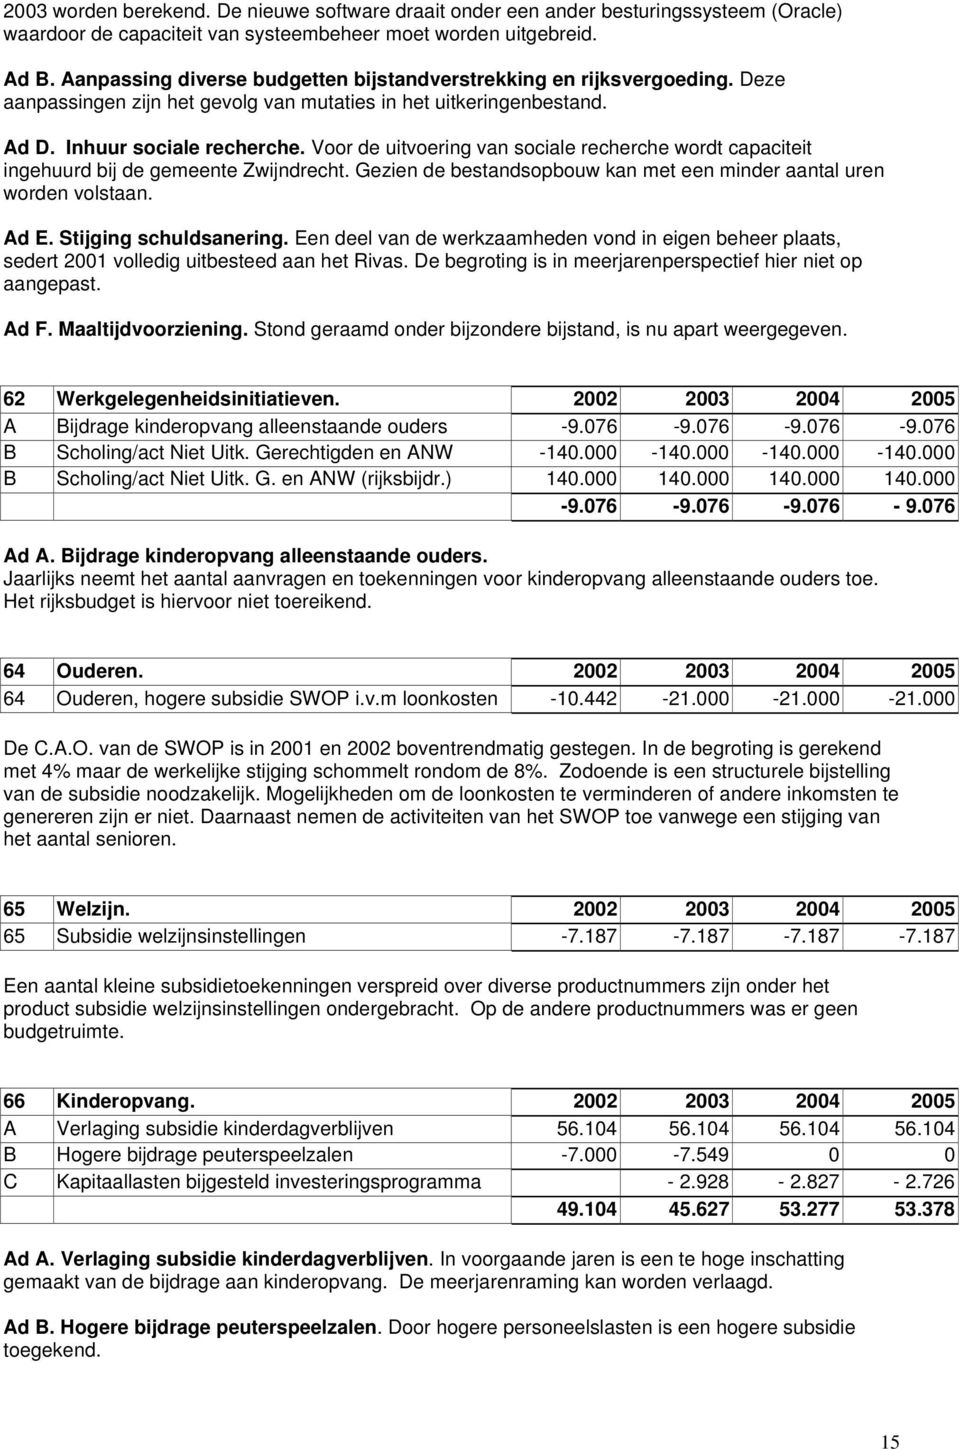 Voor de uitvoering van sociale recherche wordt capaciteit ingehuurd bij de gemeente Zwijndrecht. Gezien de bestandsopbouw kan met een minder aantal uren worden volstaan. Ad E. Stijging schuldsanering.